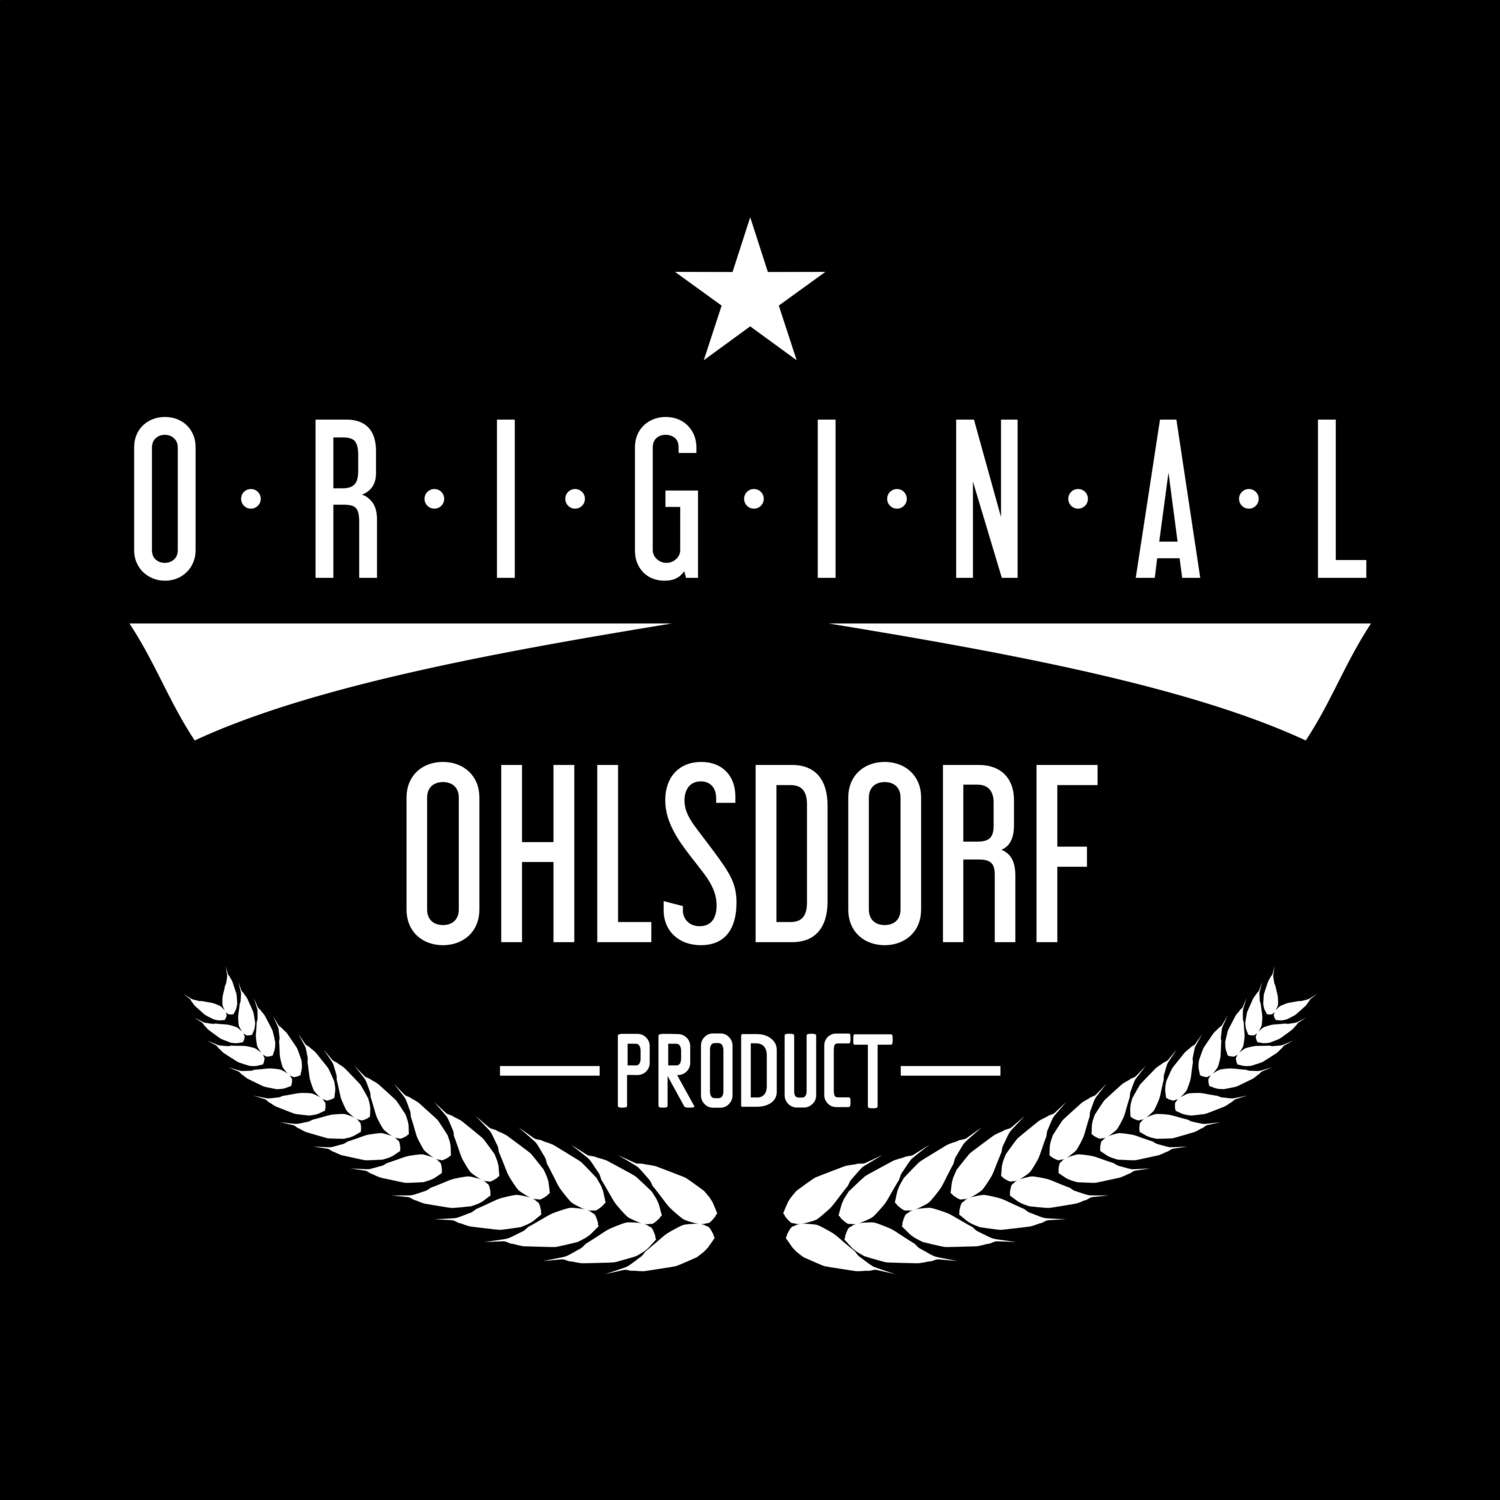 Ohlsdorf T-Shirt »Original Product«